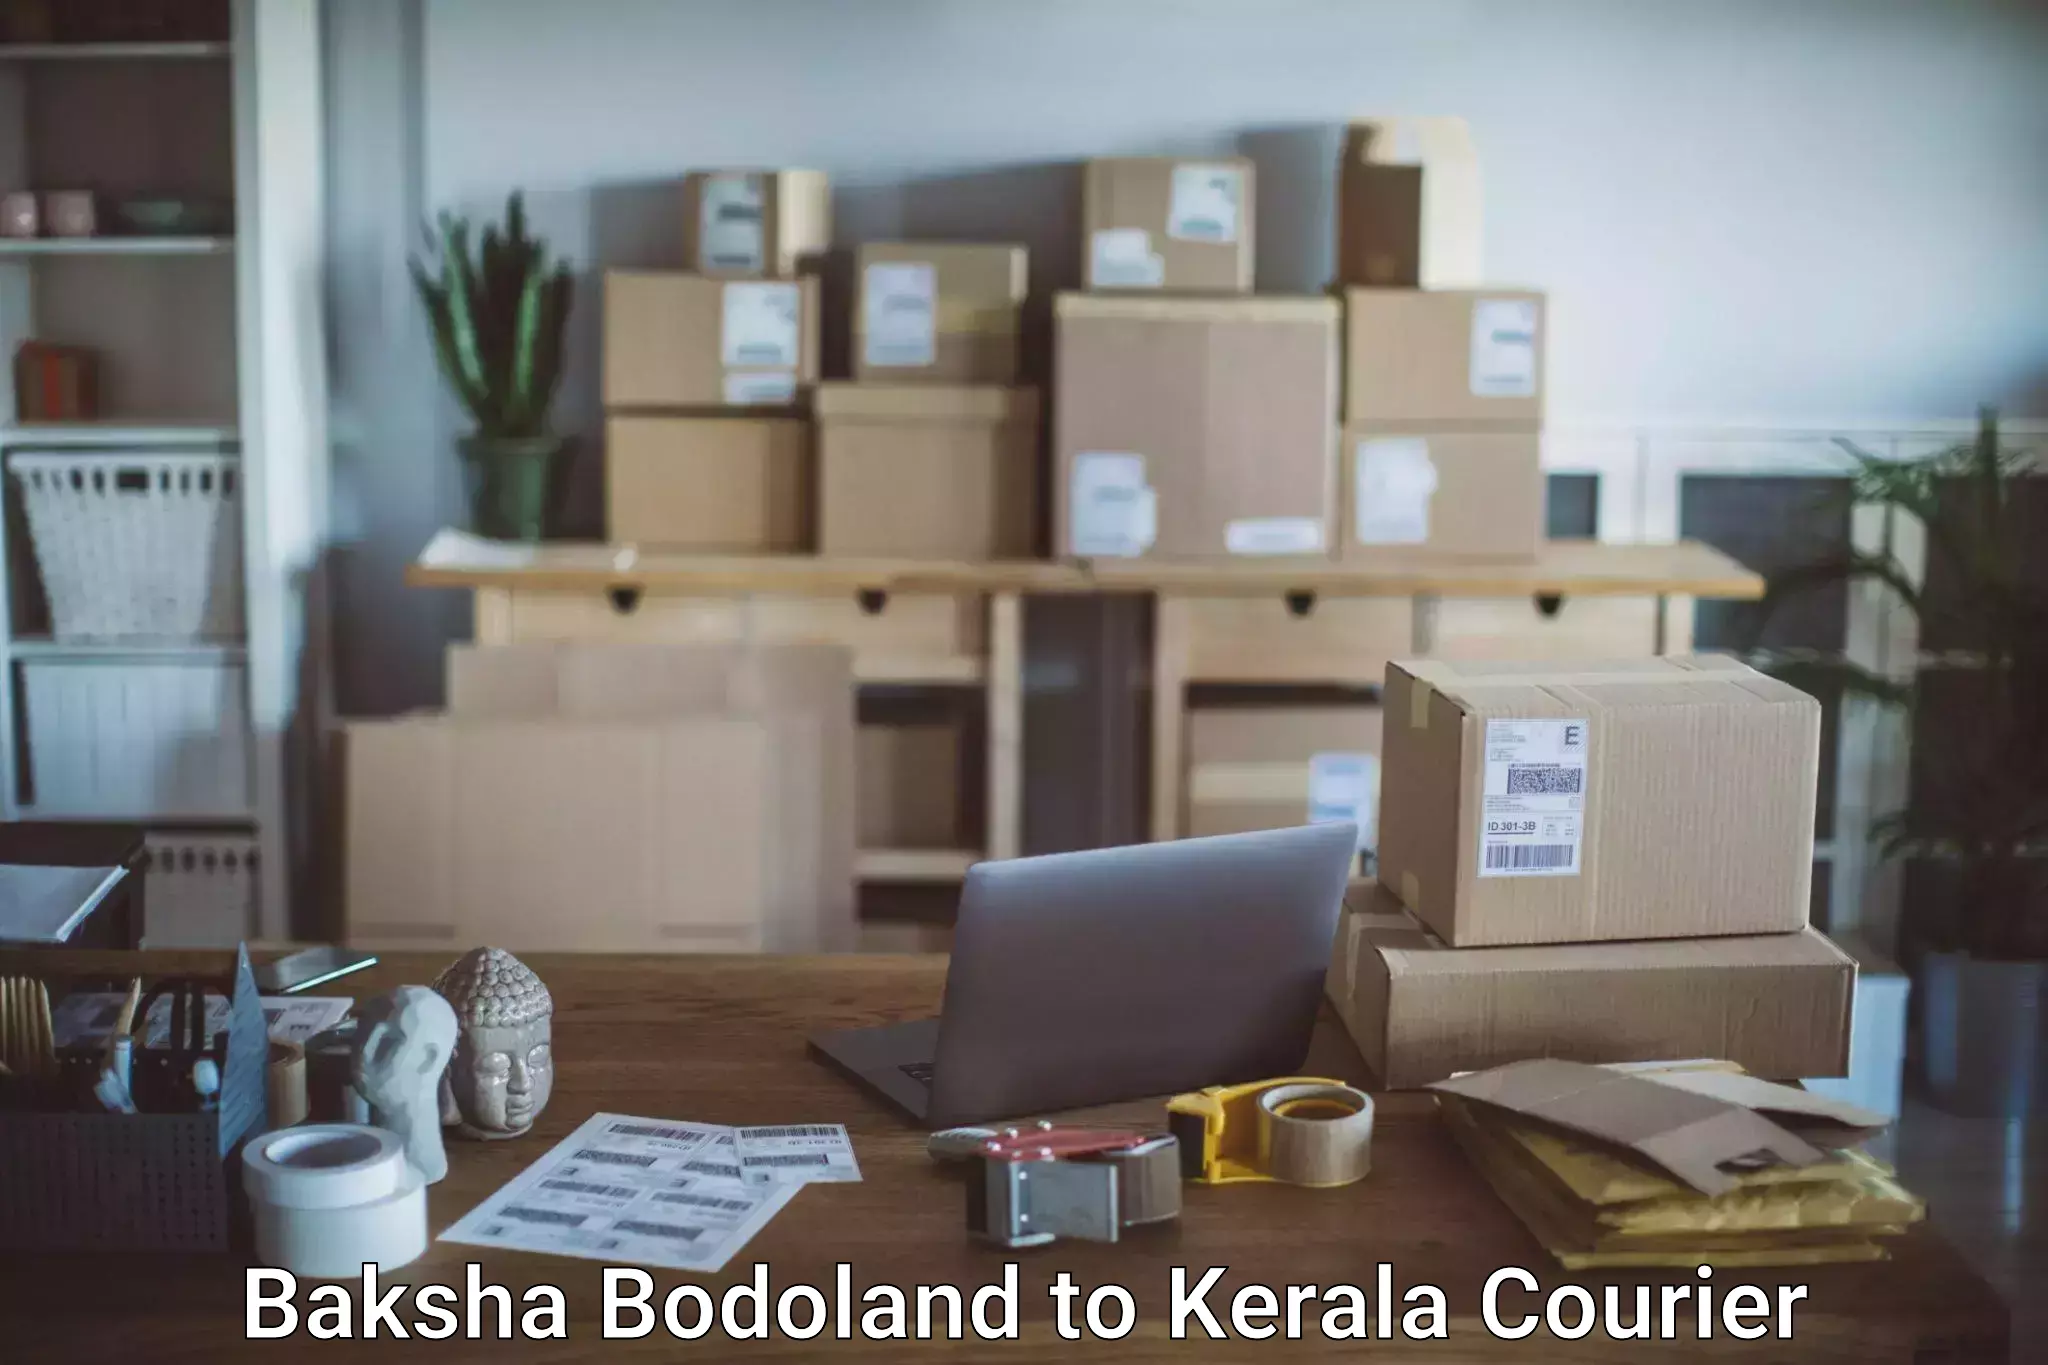 Doorstep luggage collection Baksha Bodoland to Kerala